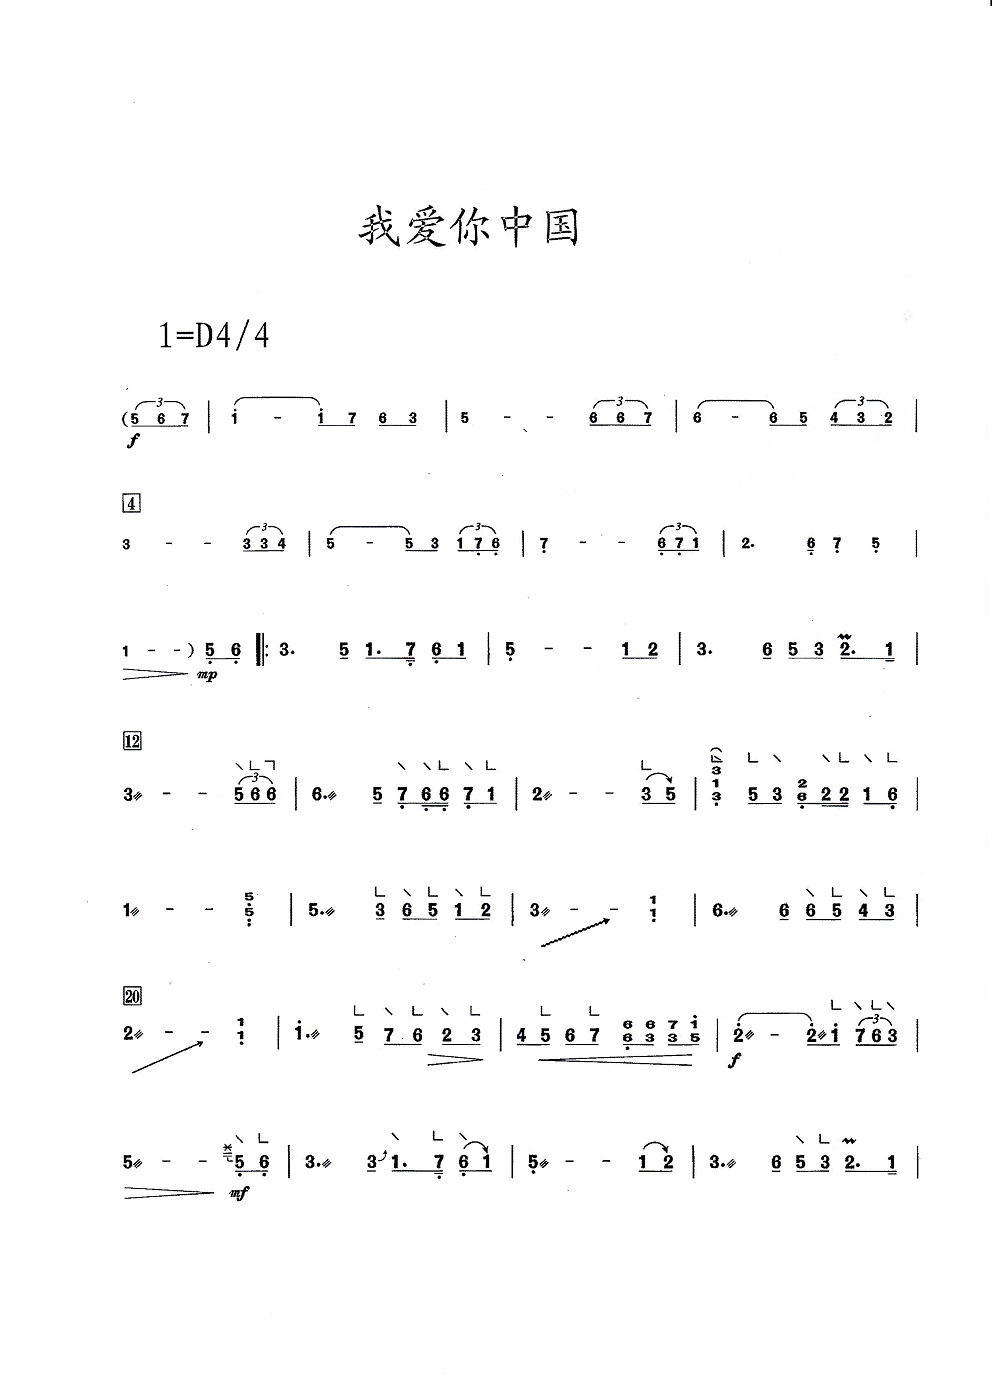 歌曲《我爱你中国》古筝完整版简谱及伴奏音乐